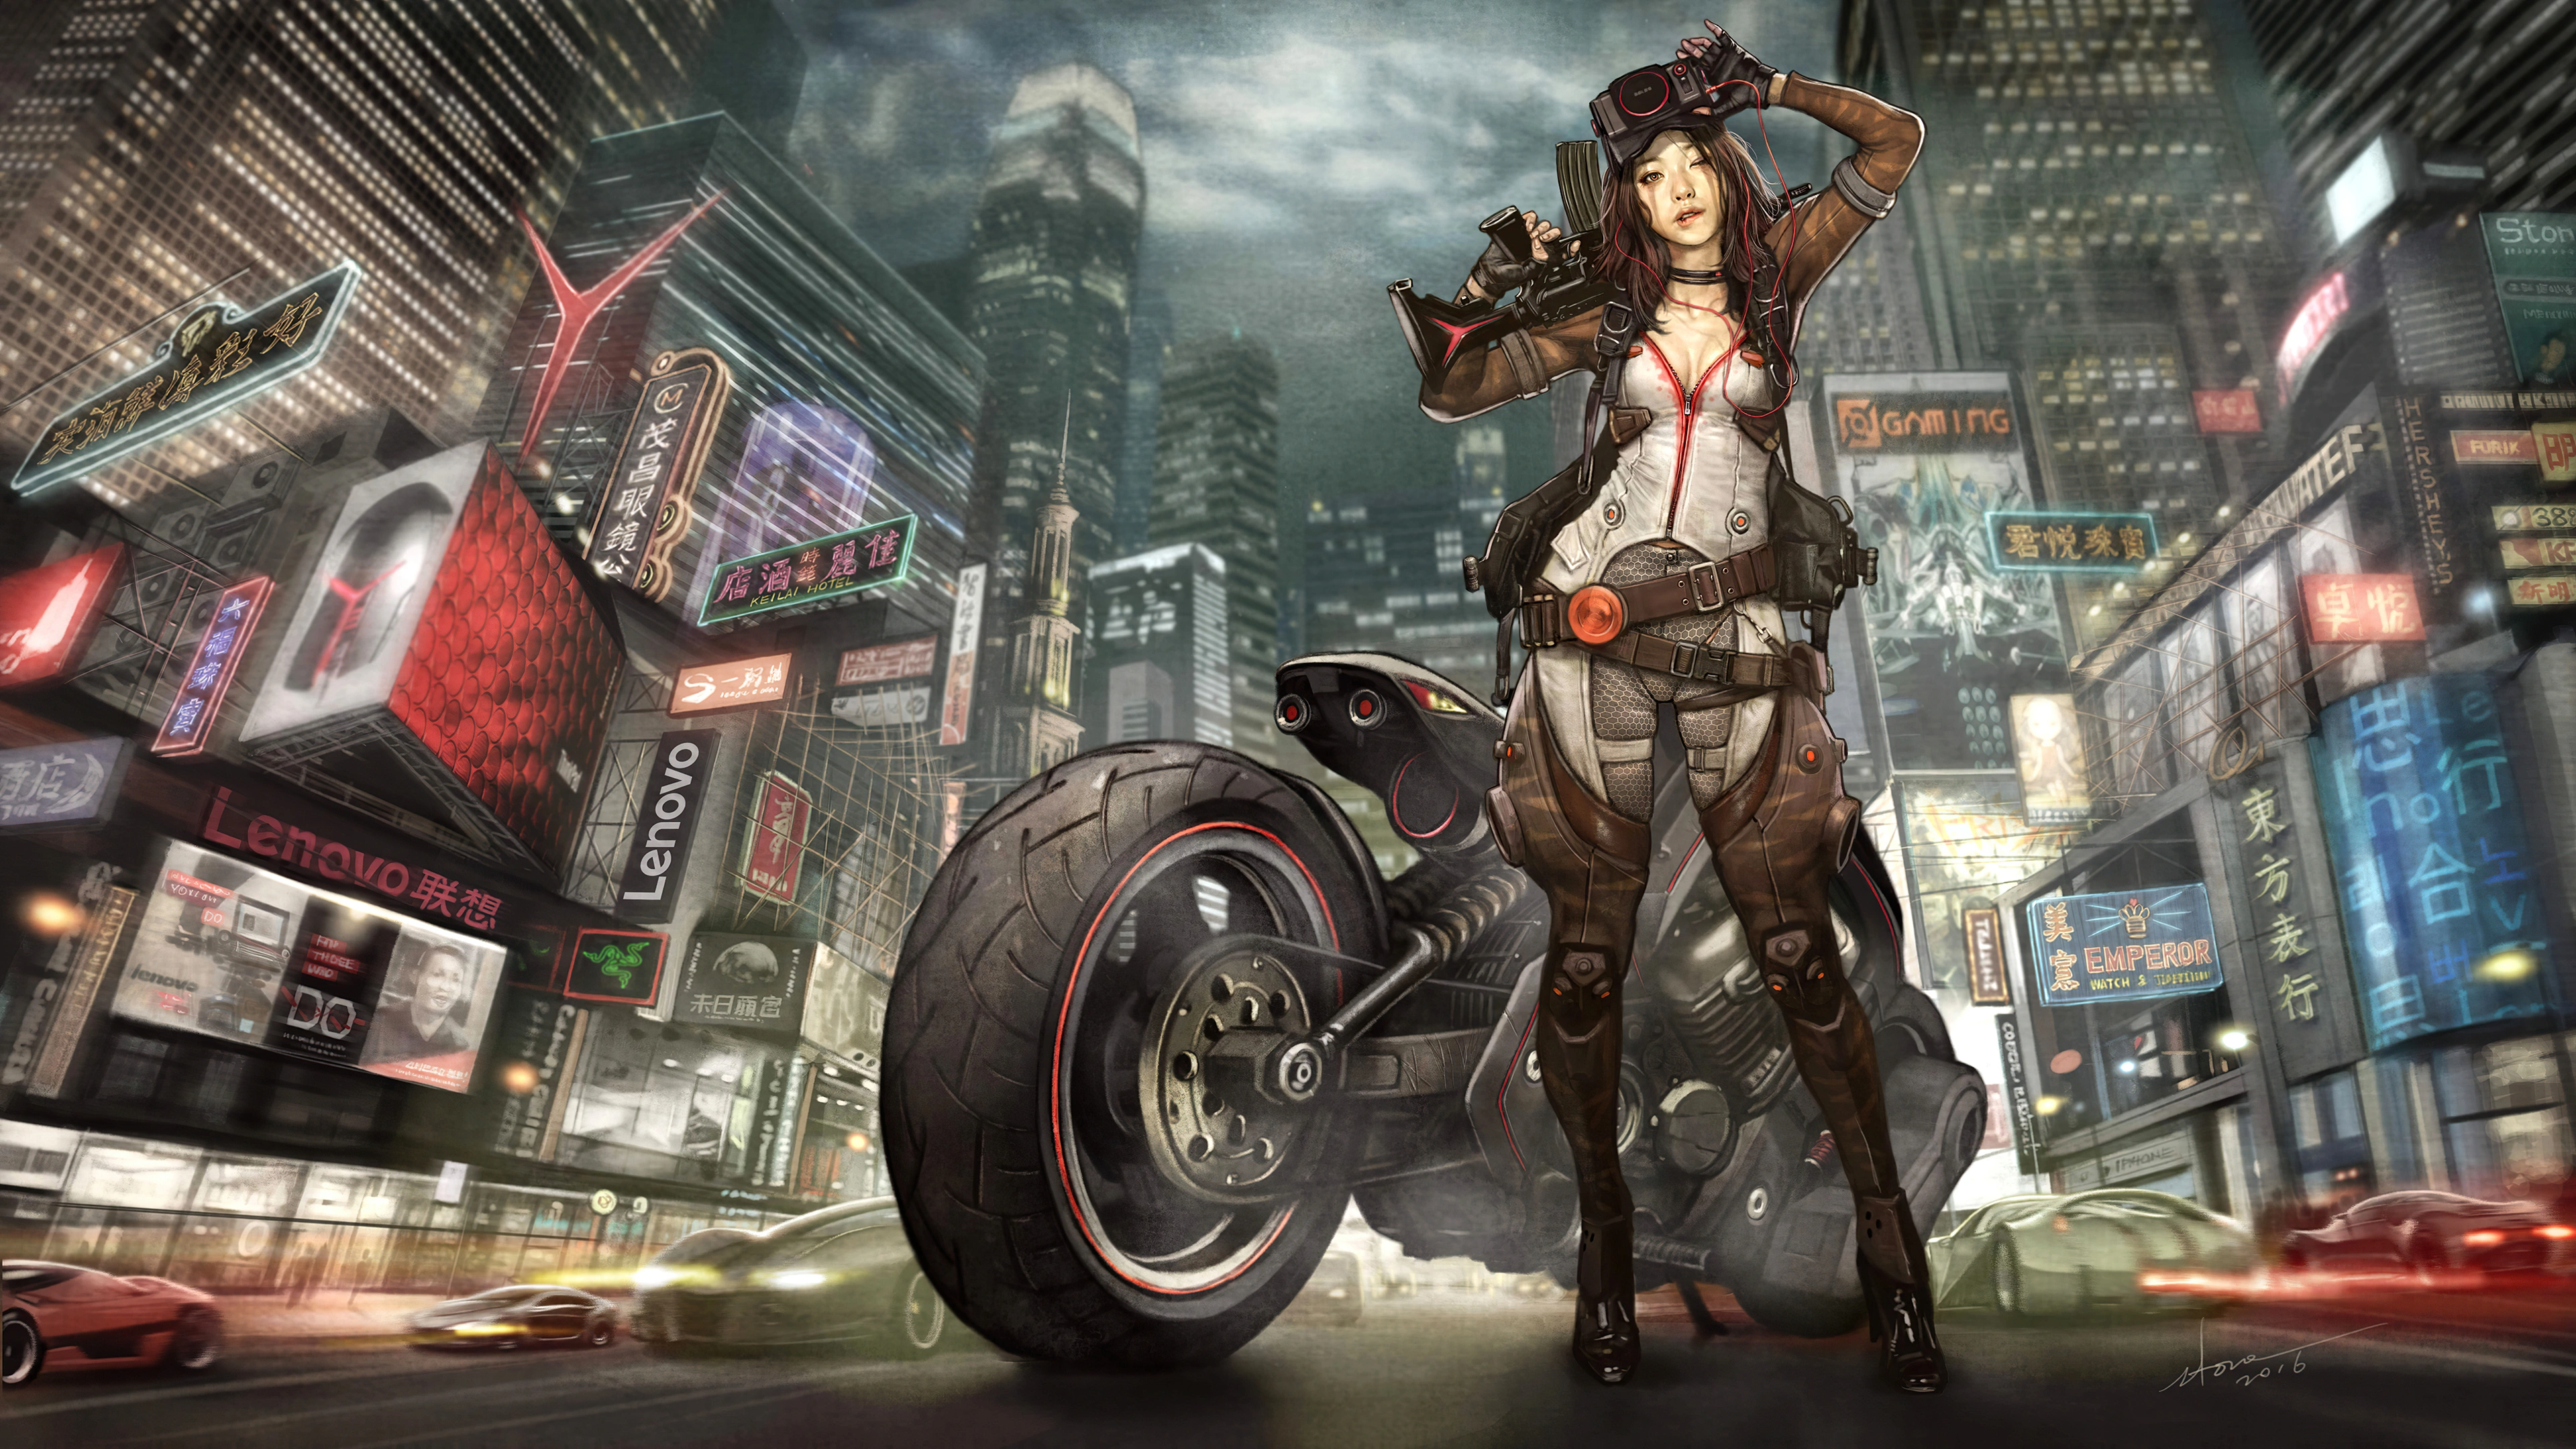 biker girl illustration ye.jpg